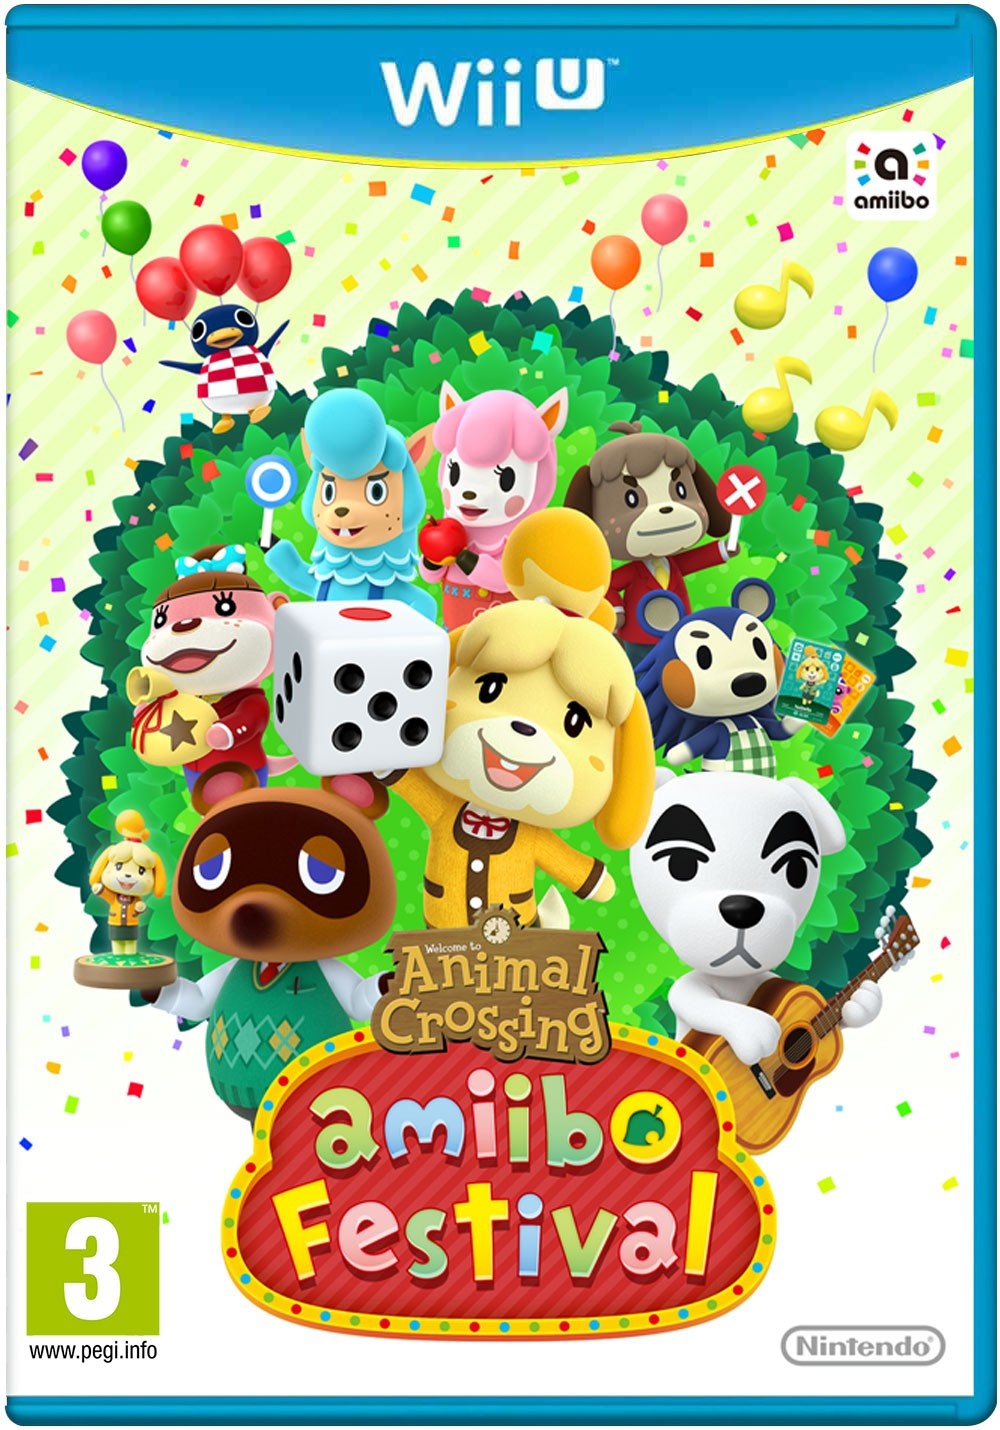 Animal Crossing: amiibo - Wii U in